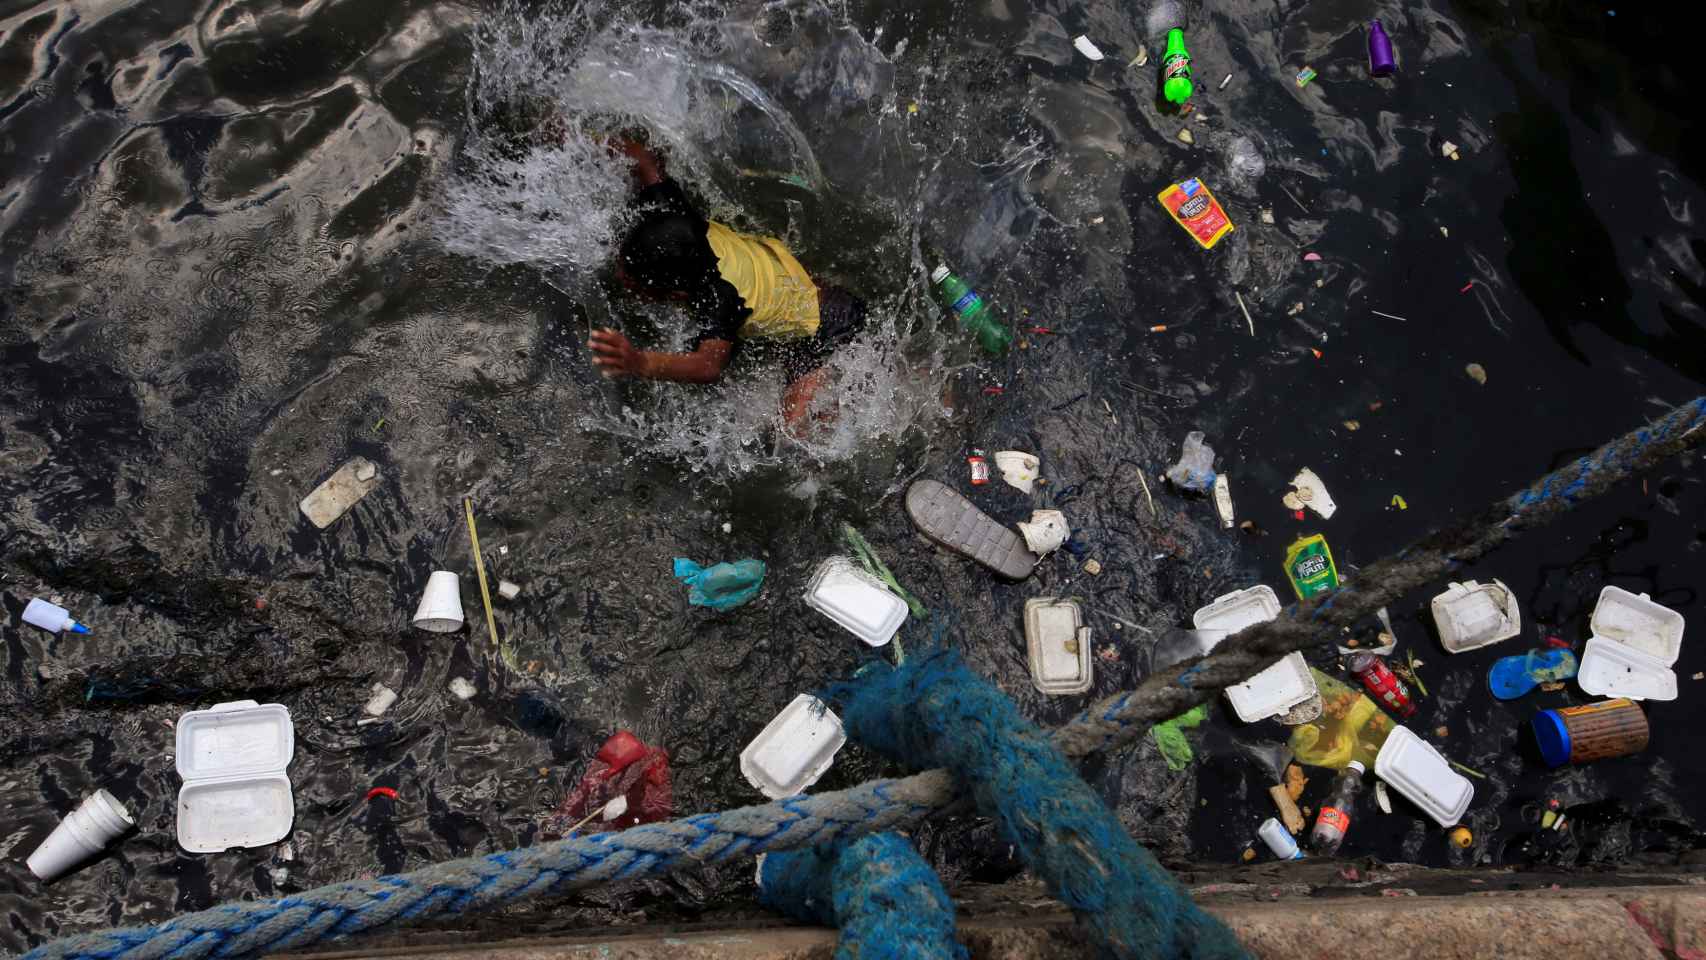 El plástico nos mata: Cubiertos desechables: una hora de merendola y 400  años en el mar